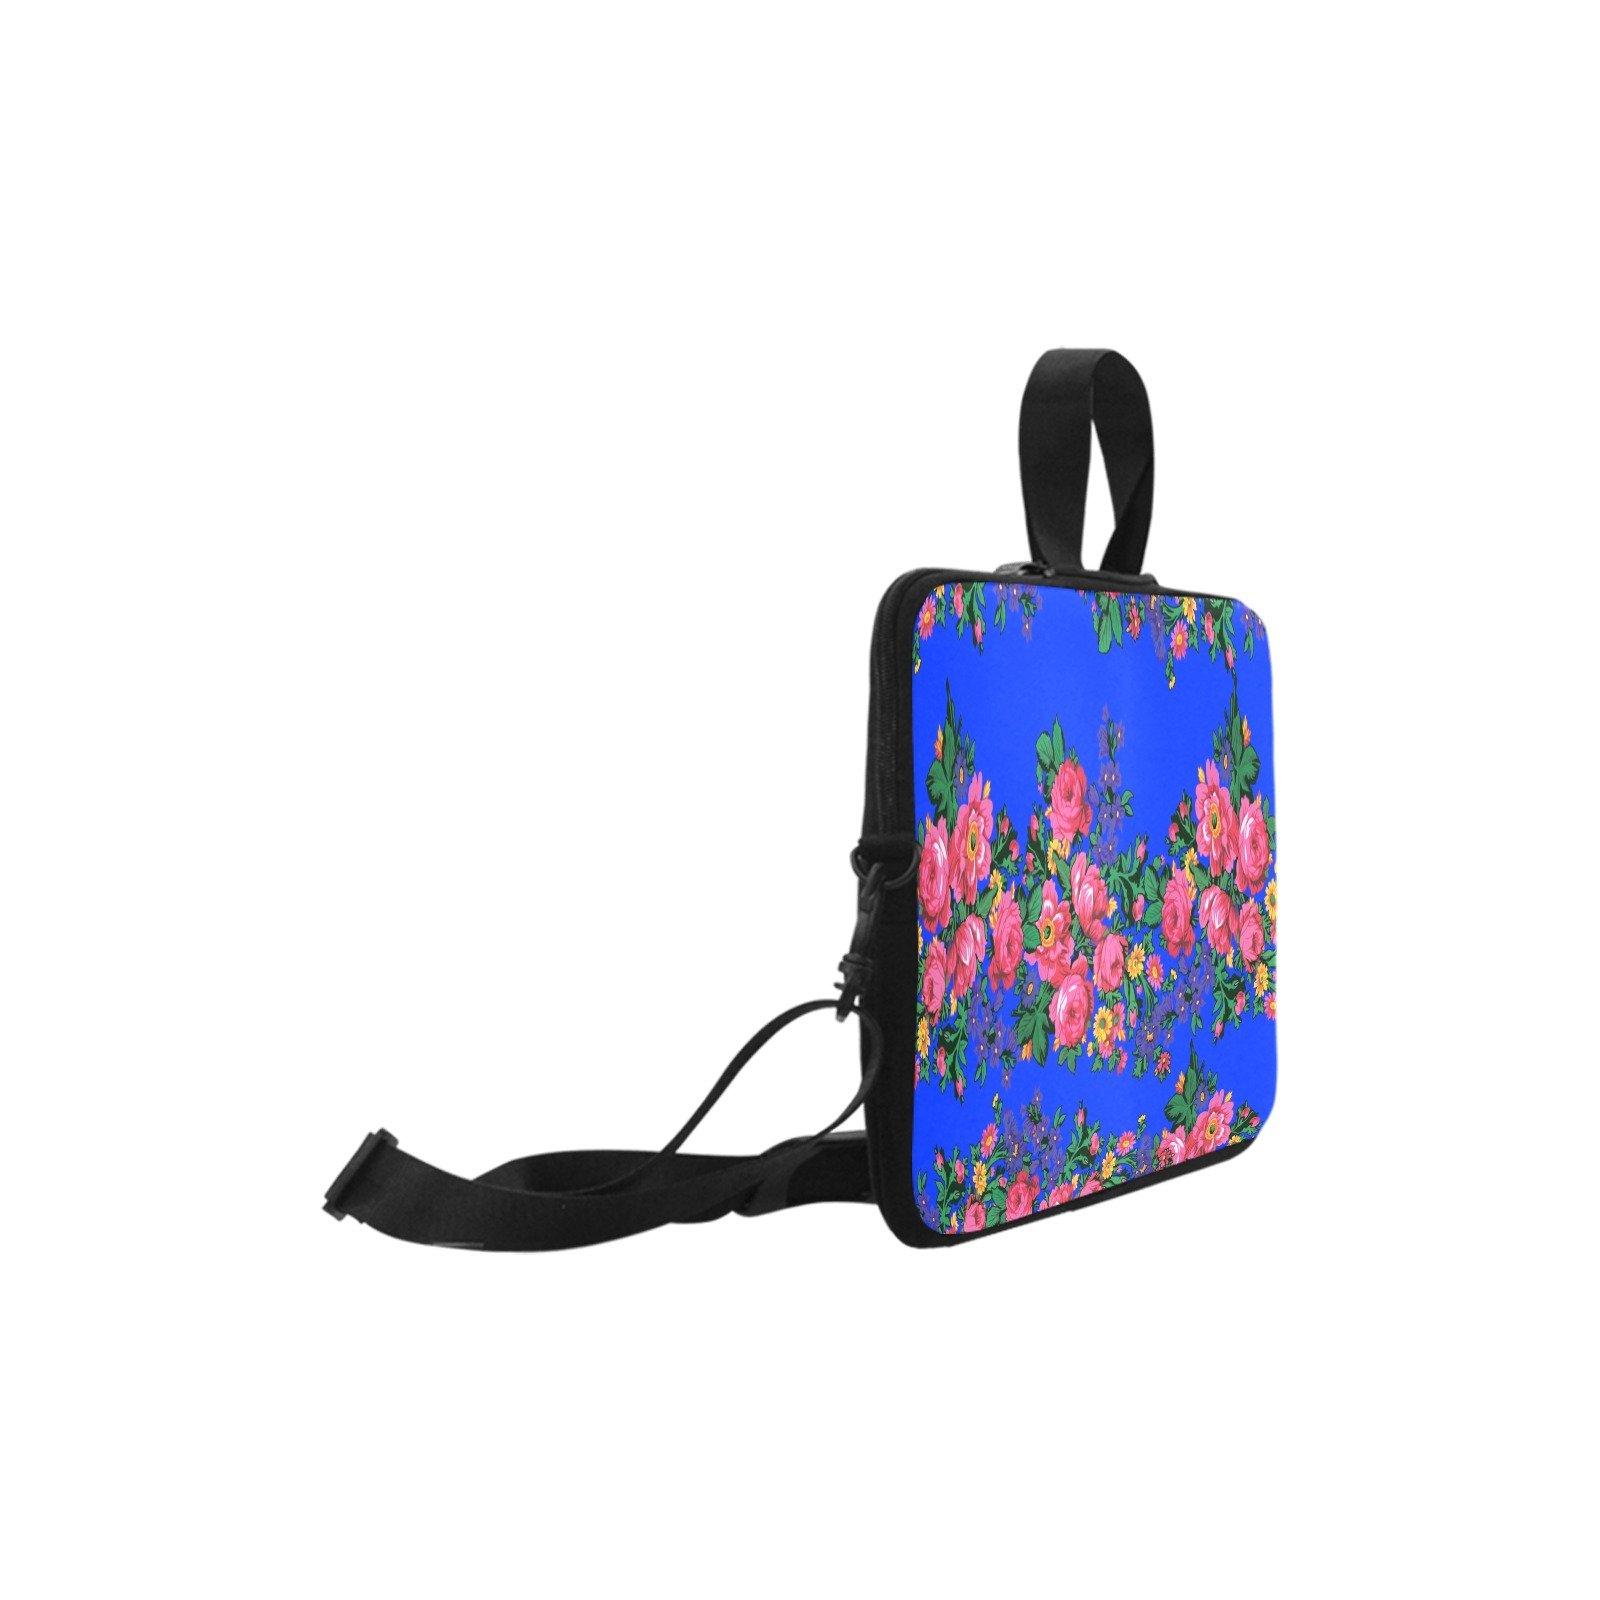 Kokum's Revenge Royal Laptop Handbags 14" bag e-joyer 